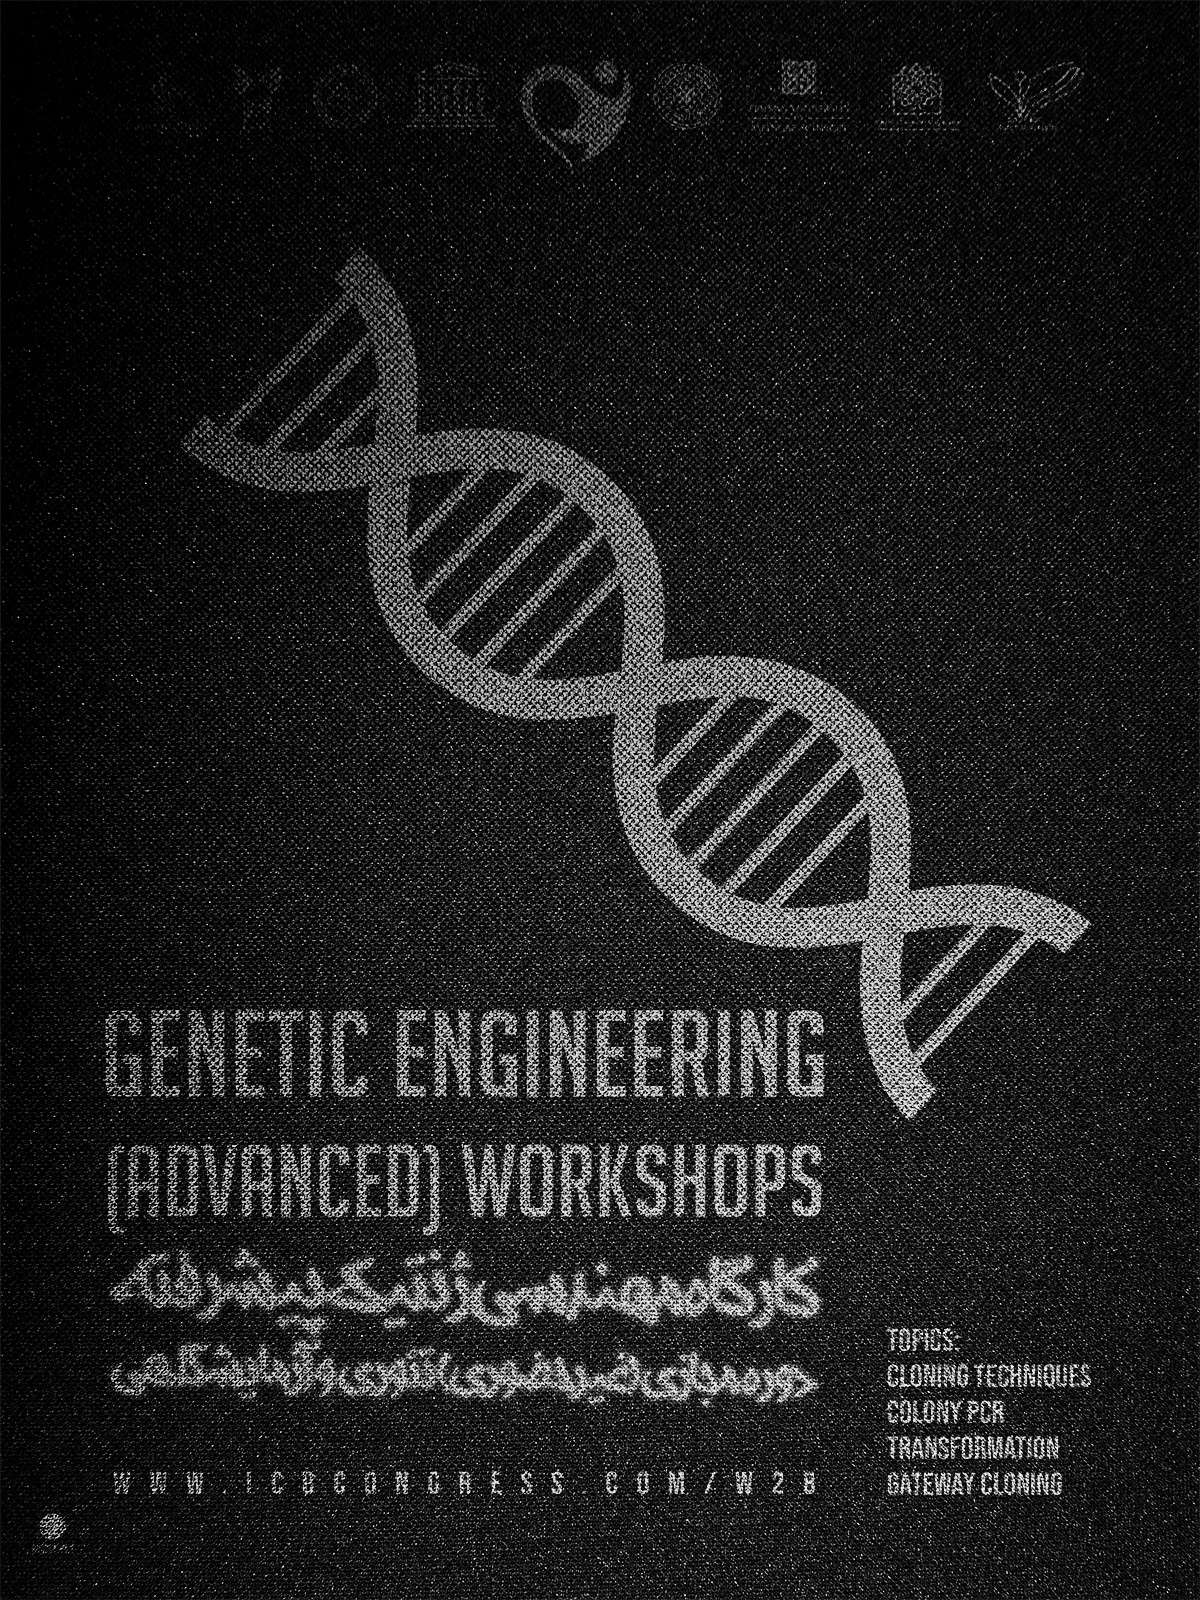 کارگاه مهندسی ژنتیک پیشرفته (آنلاین)